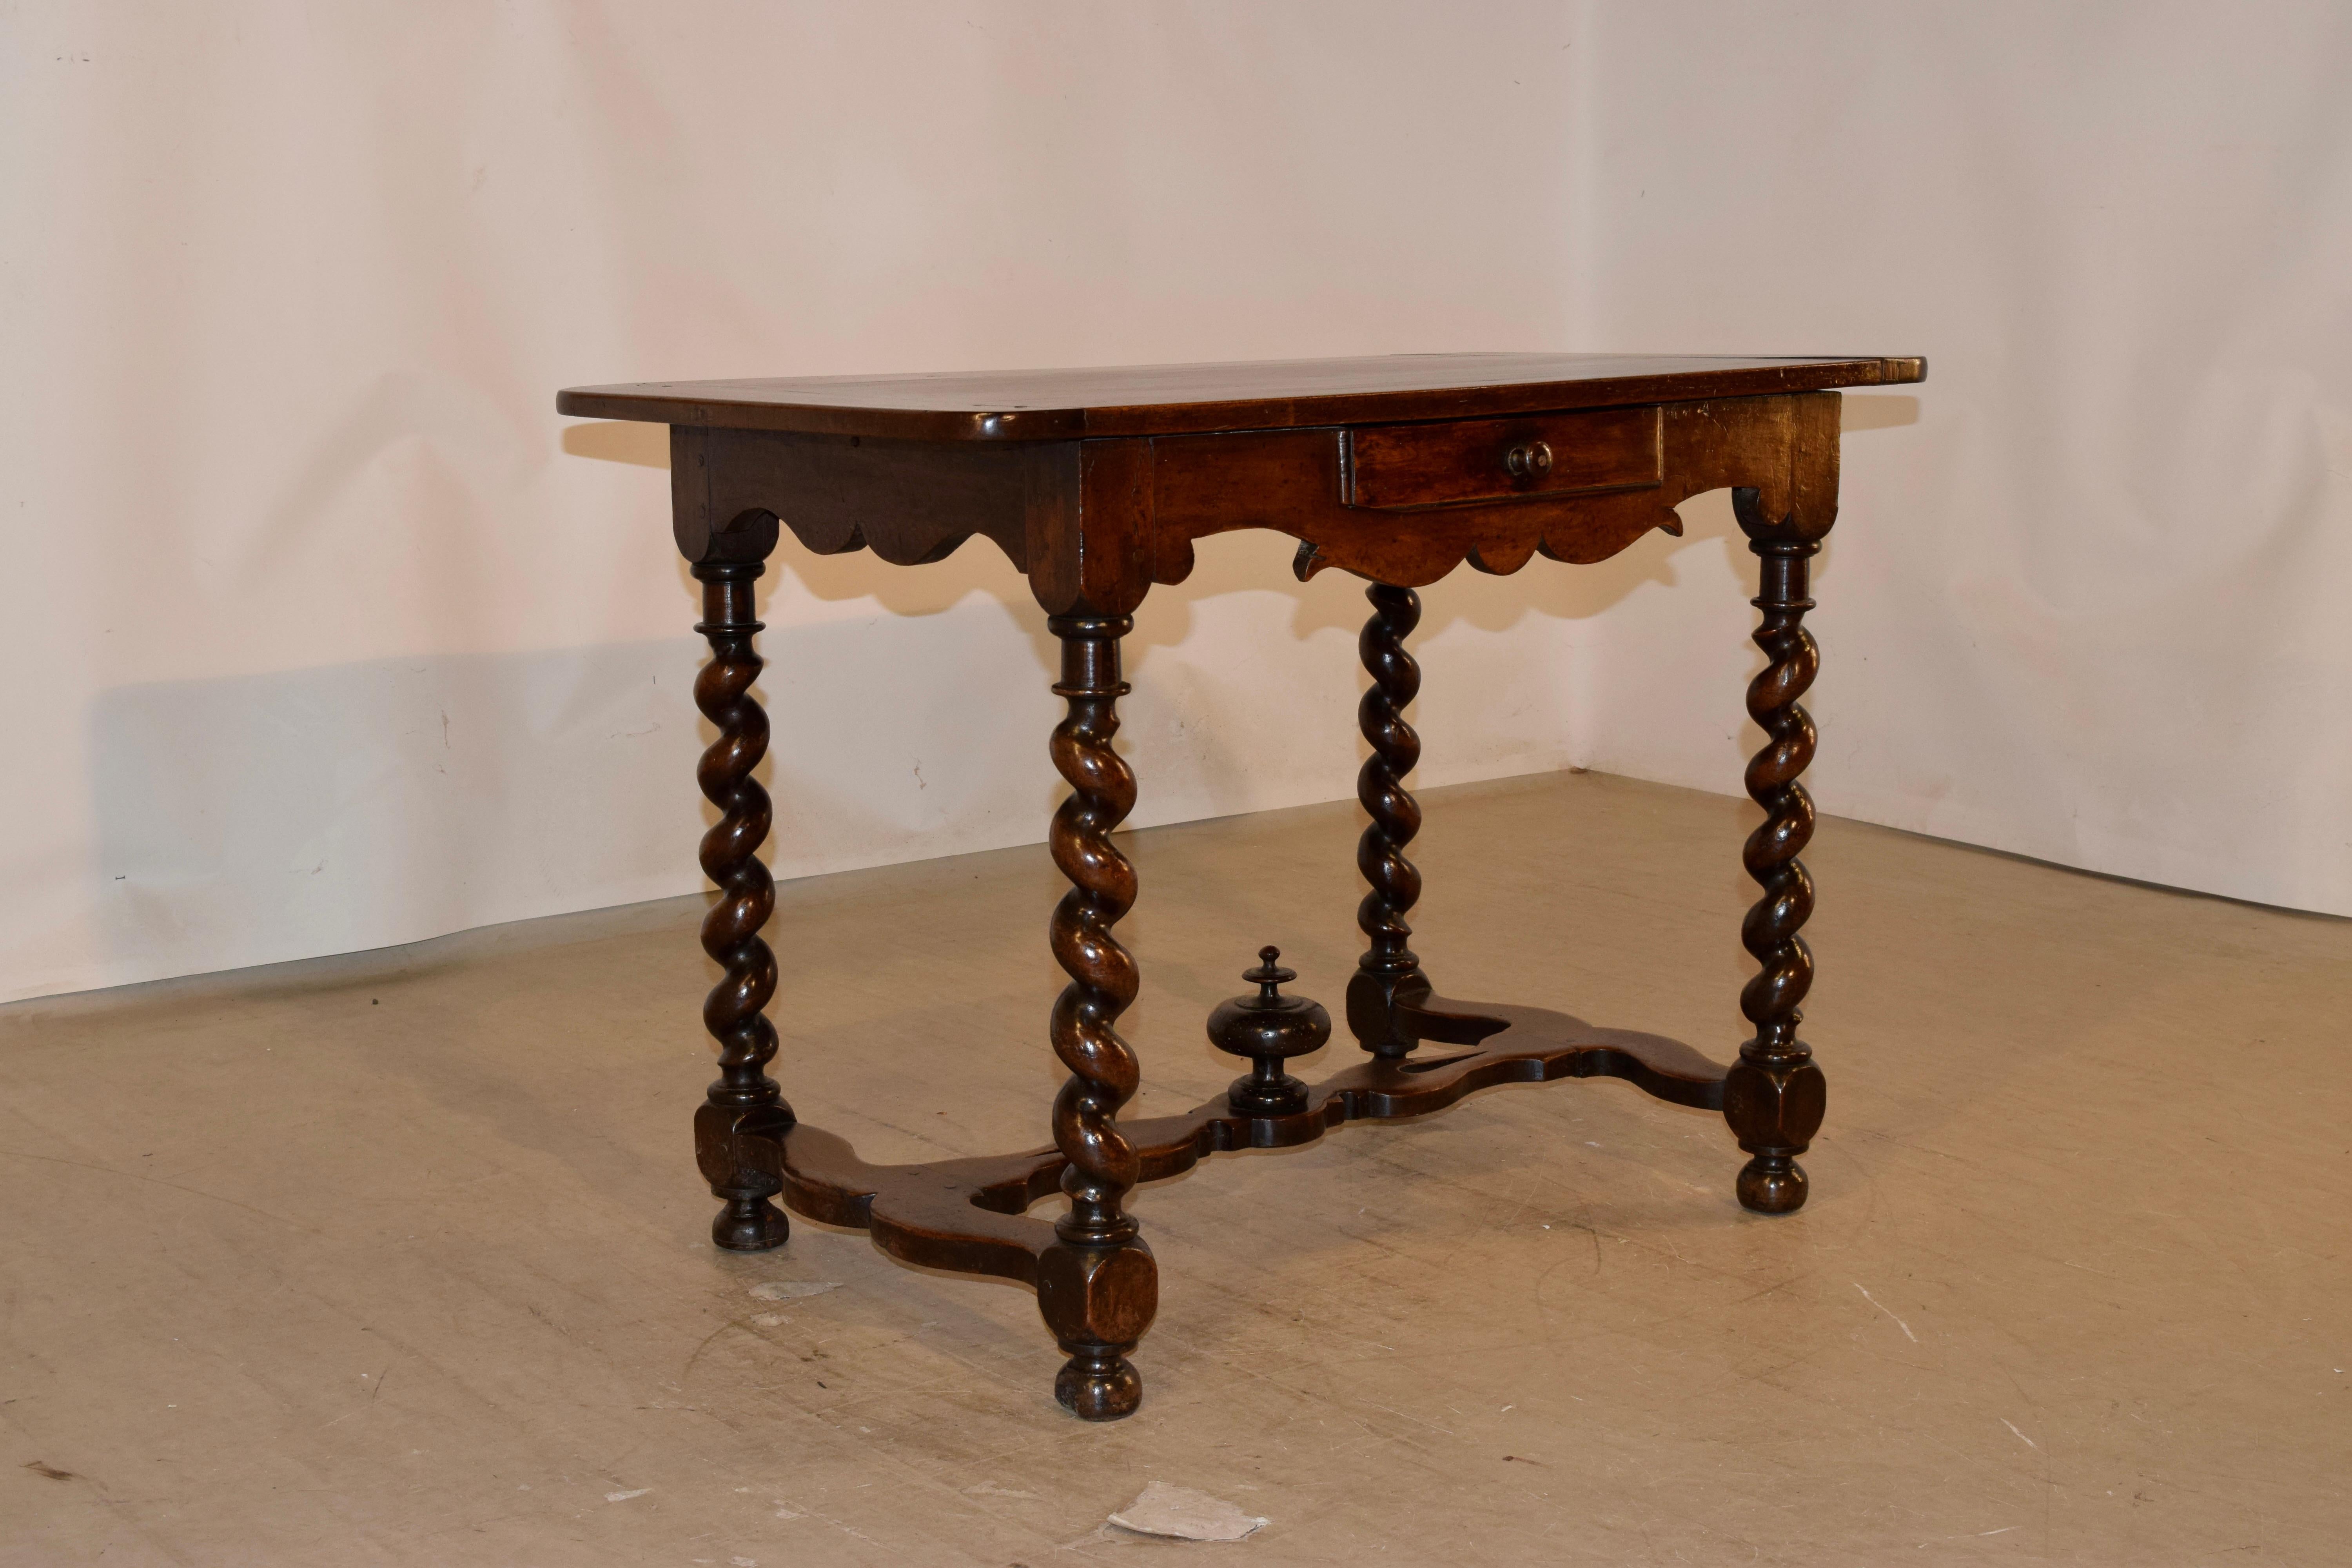 Beistelltisch aus Nussbaumholz aus der Mitte des 18. Jahrhunderts aus Frankreich mit gebänderten Abschlüssen auf der Platte, über wunderschön von Hand geschwungenen Schürzen auf drei Seiten und einer einzelnen Schublade in der Front. Der Tisch ist